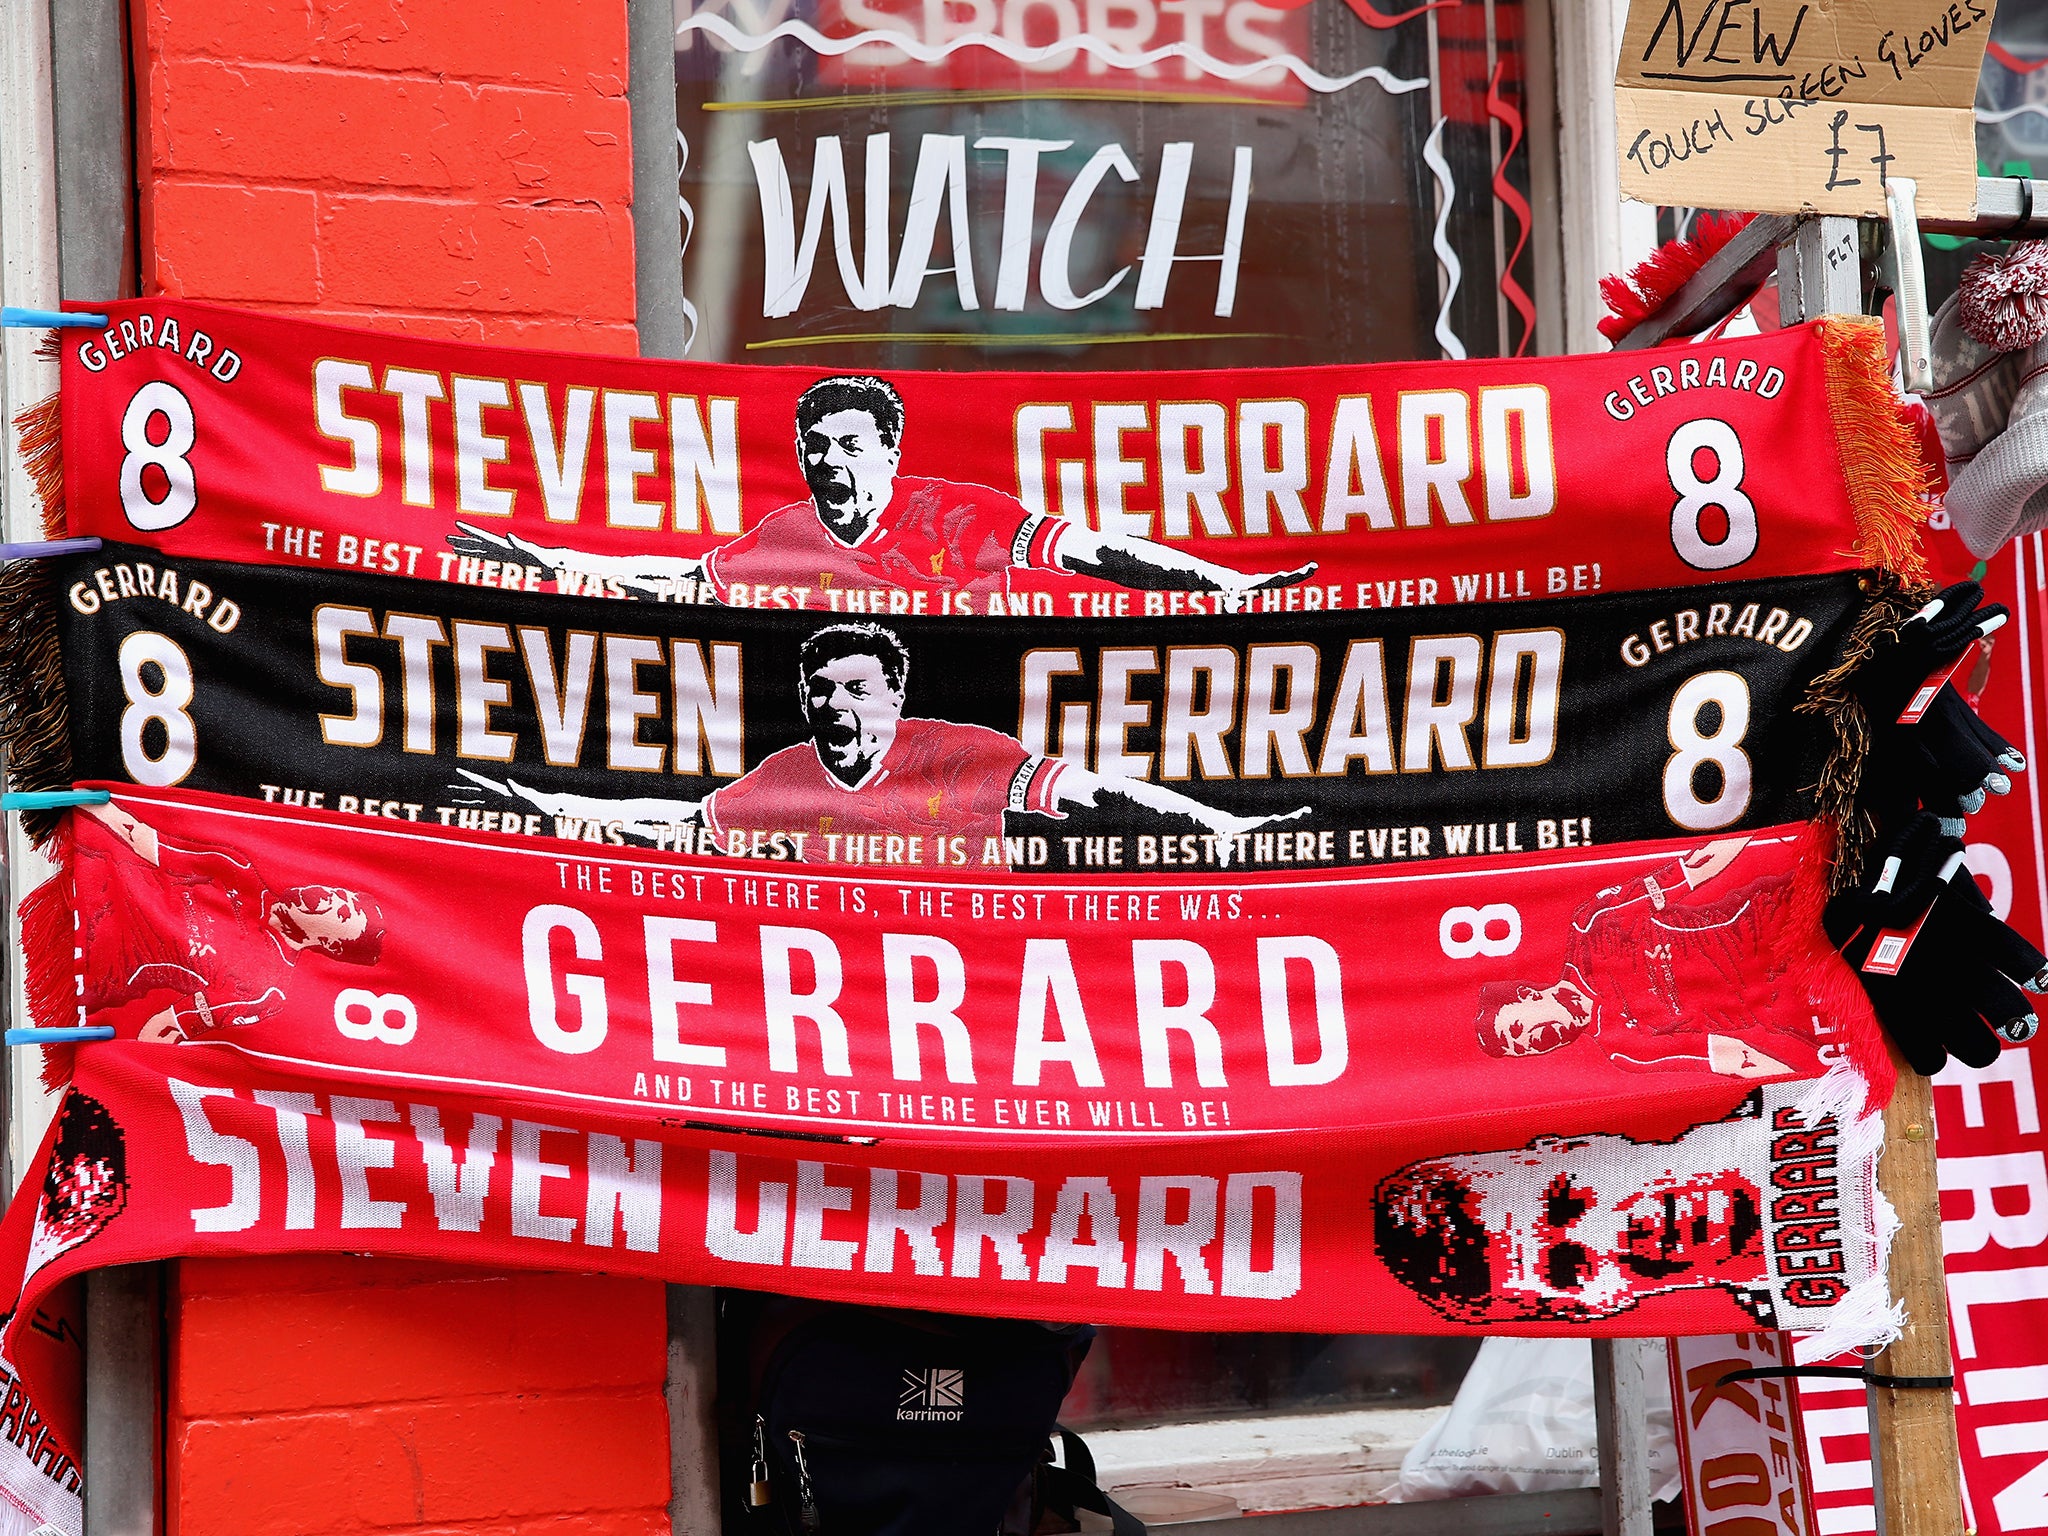 Steven Gerrard scarves on sale outside Anfield